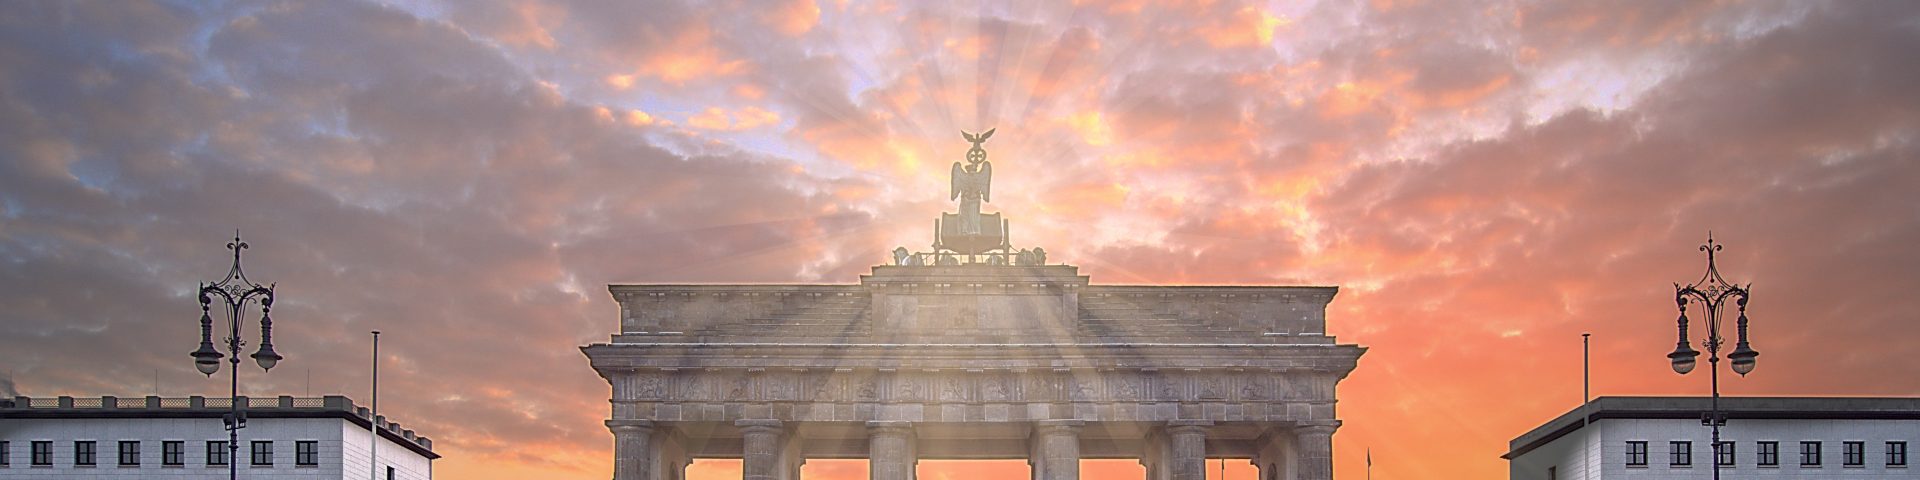 wo die Sonne zuerst aufgeht Berliner Tor